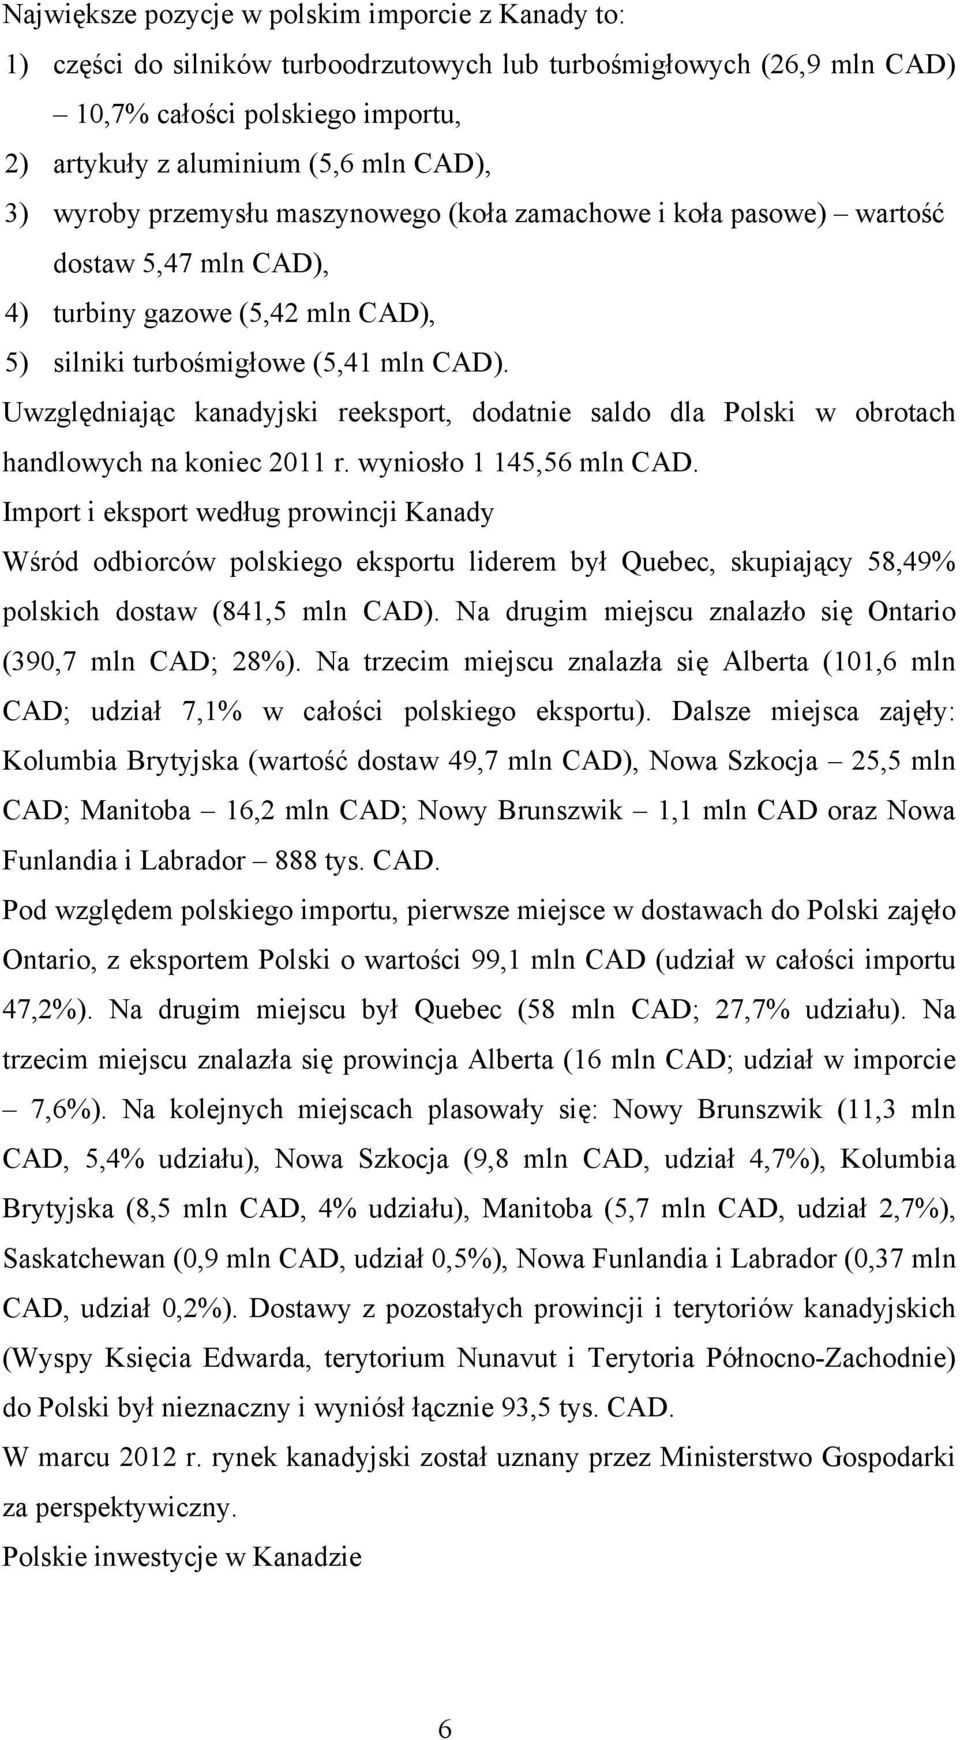 Uwzględniając kanadyjski reeksport, dodatnie saldo dla Polski w obrotach handlowych na koniec 2011 r. wyniosło 1 145,56 mln CAD.